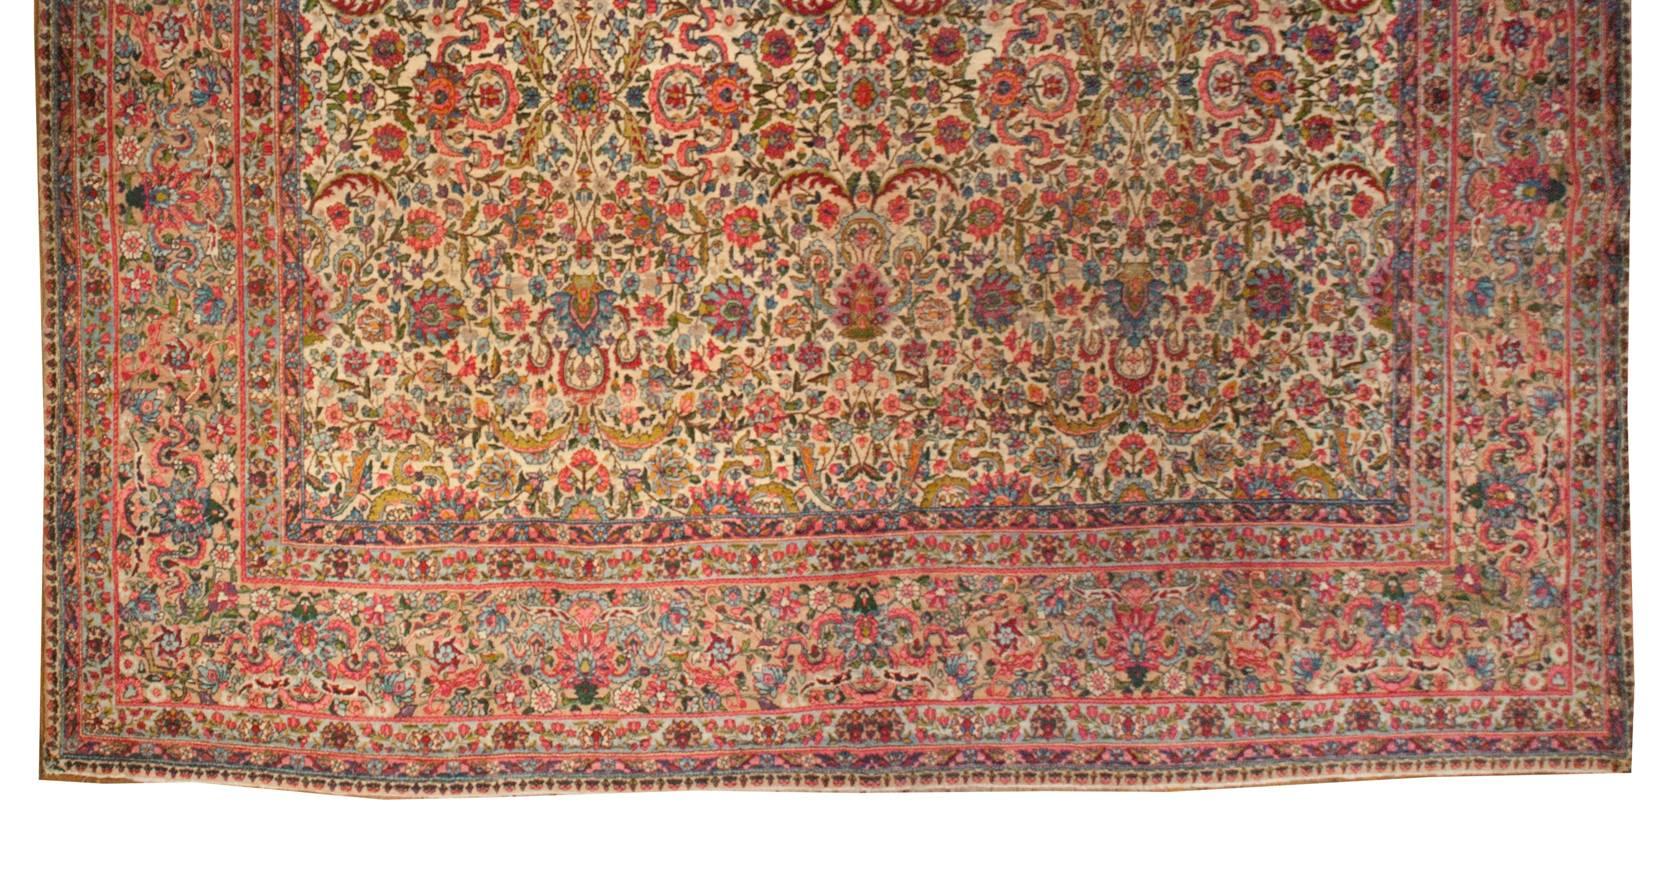 Ein schöner persischer Kirman-Teppich aus dem frühen 20. Jahrhundert mit einem aufwendigen und kunstvoll gewebten mehrfarbigen Allover-Muster aus ineinander verwobenen großen und kleinen Blumen, Ranken und Blättern auf einem natürlichen, ungefärbten